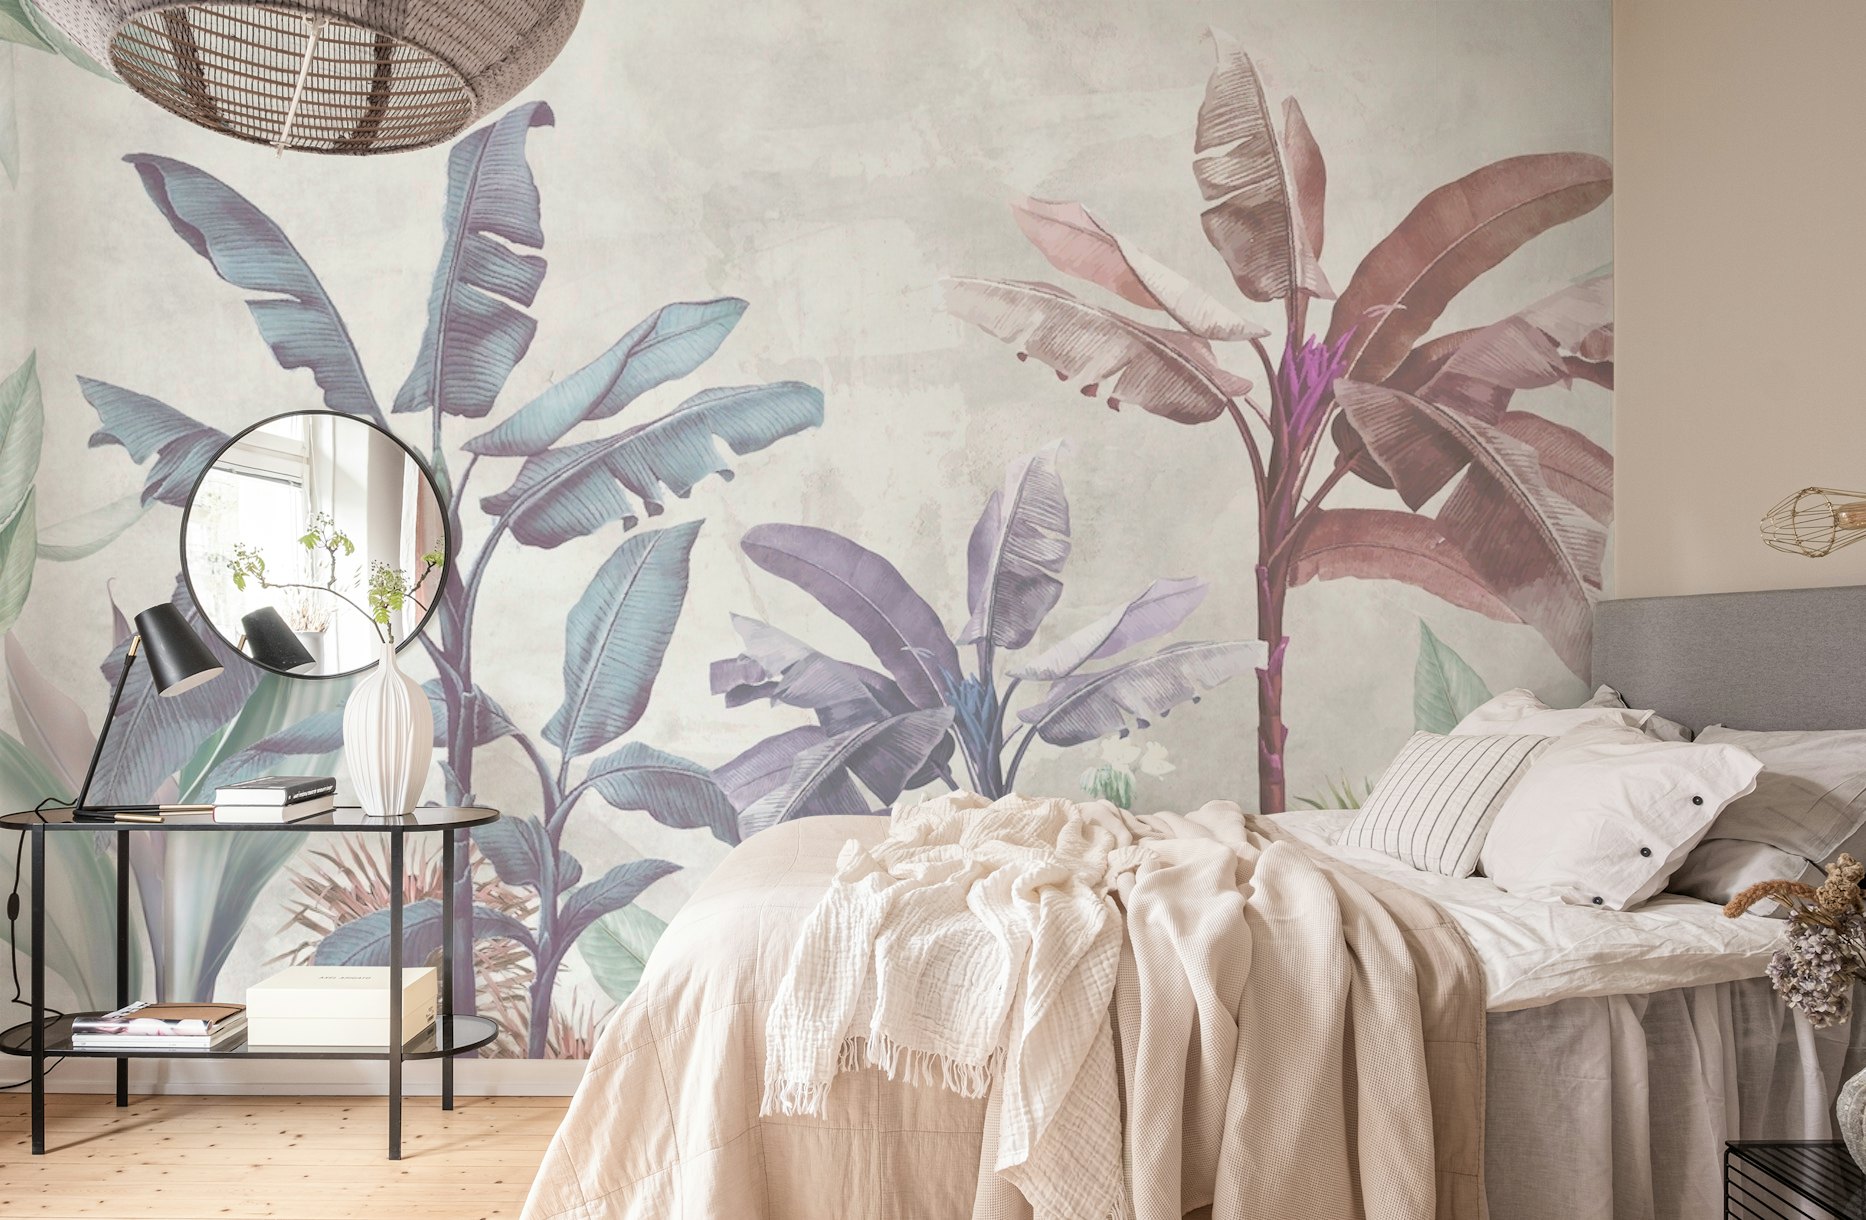 Soft botanical art wallpaper